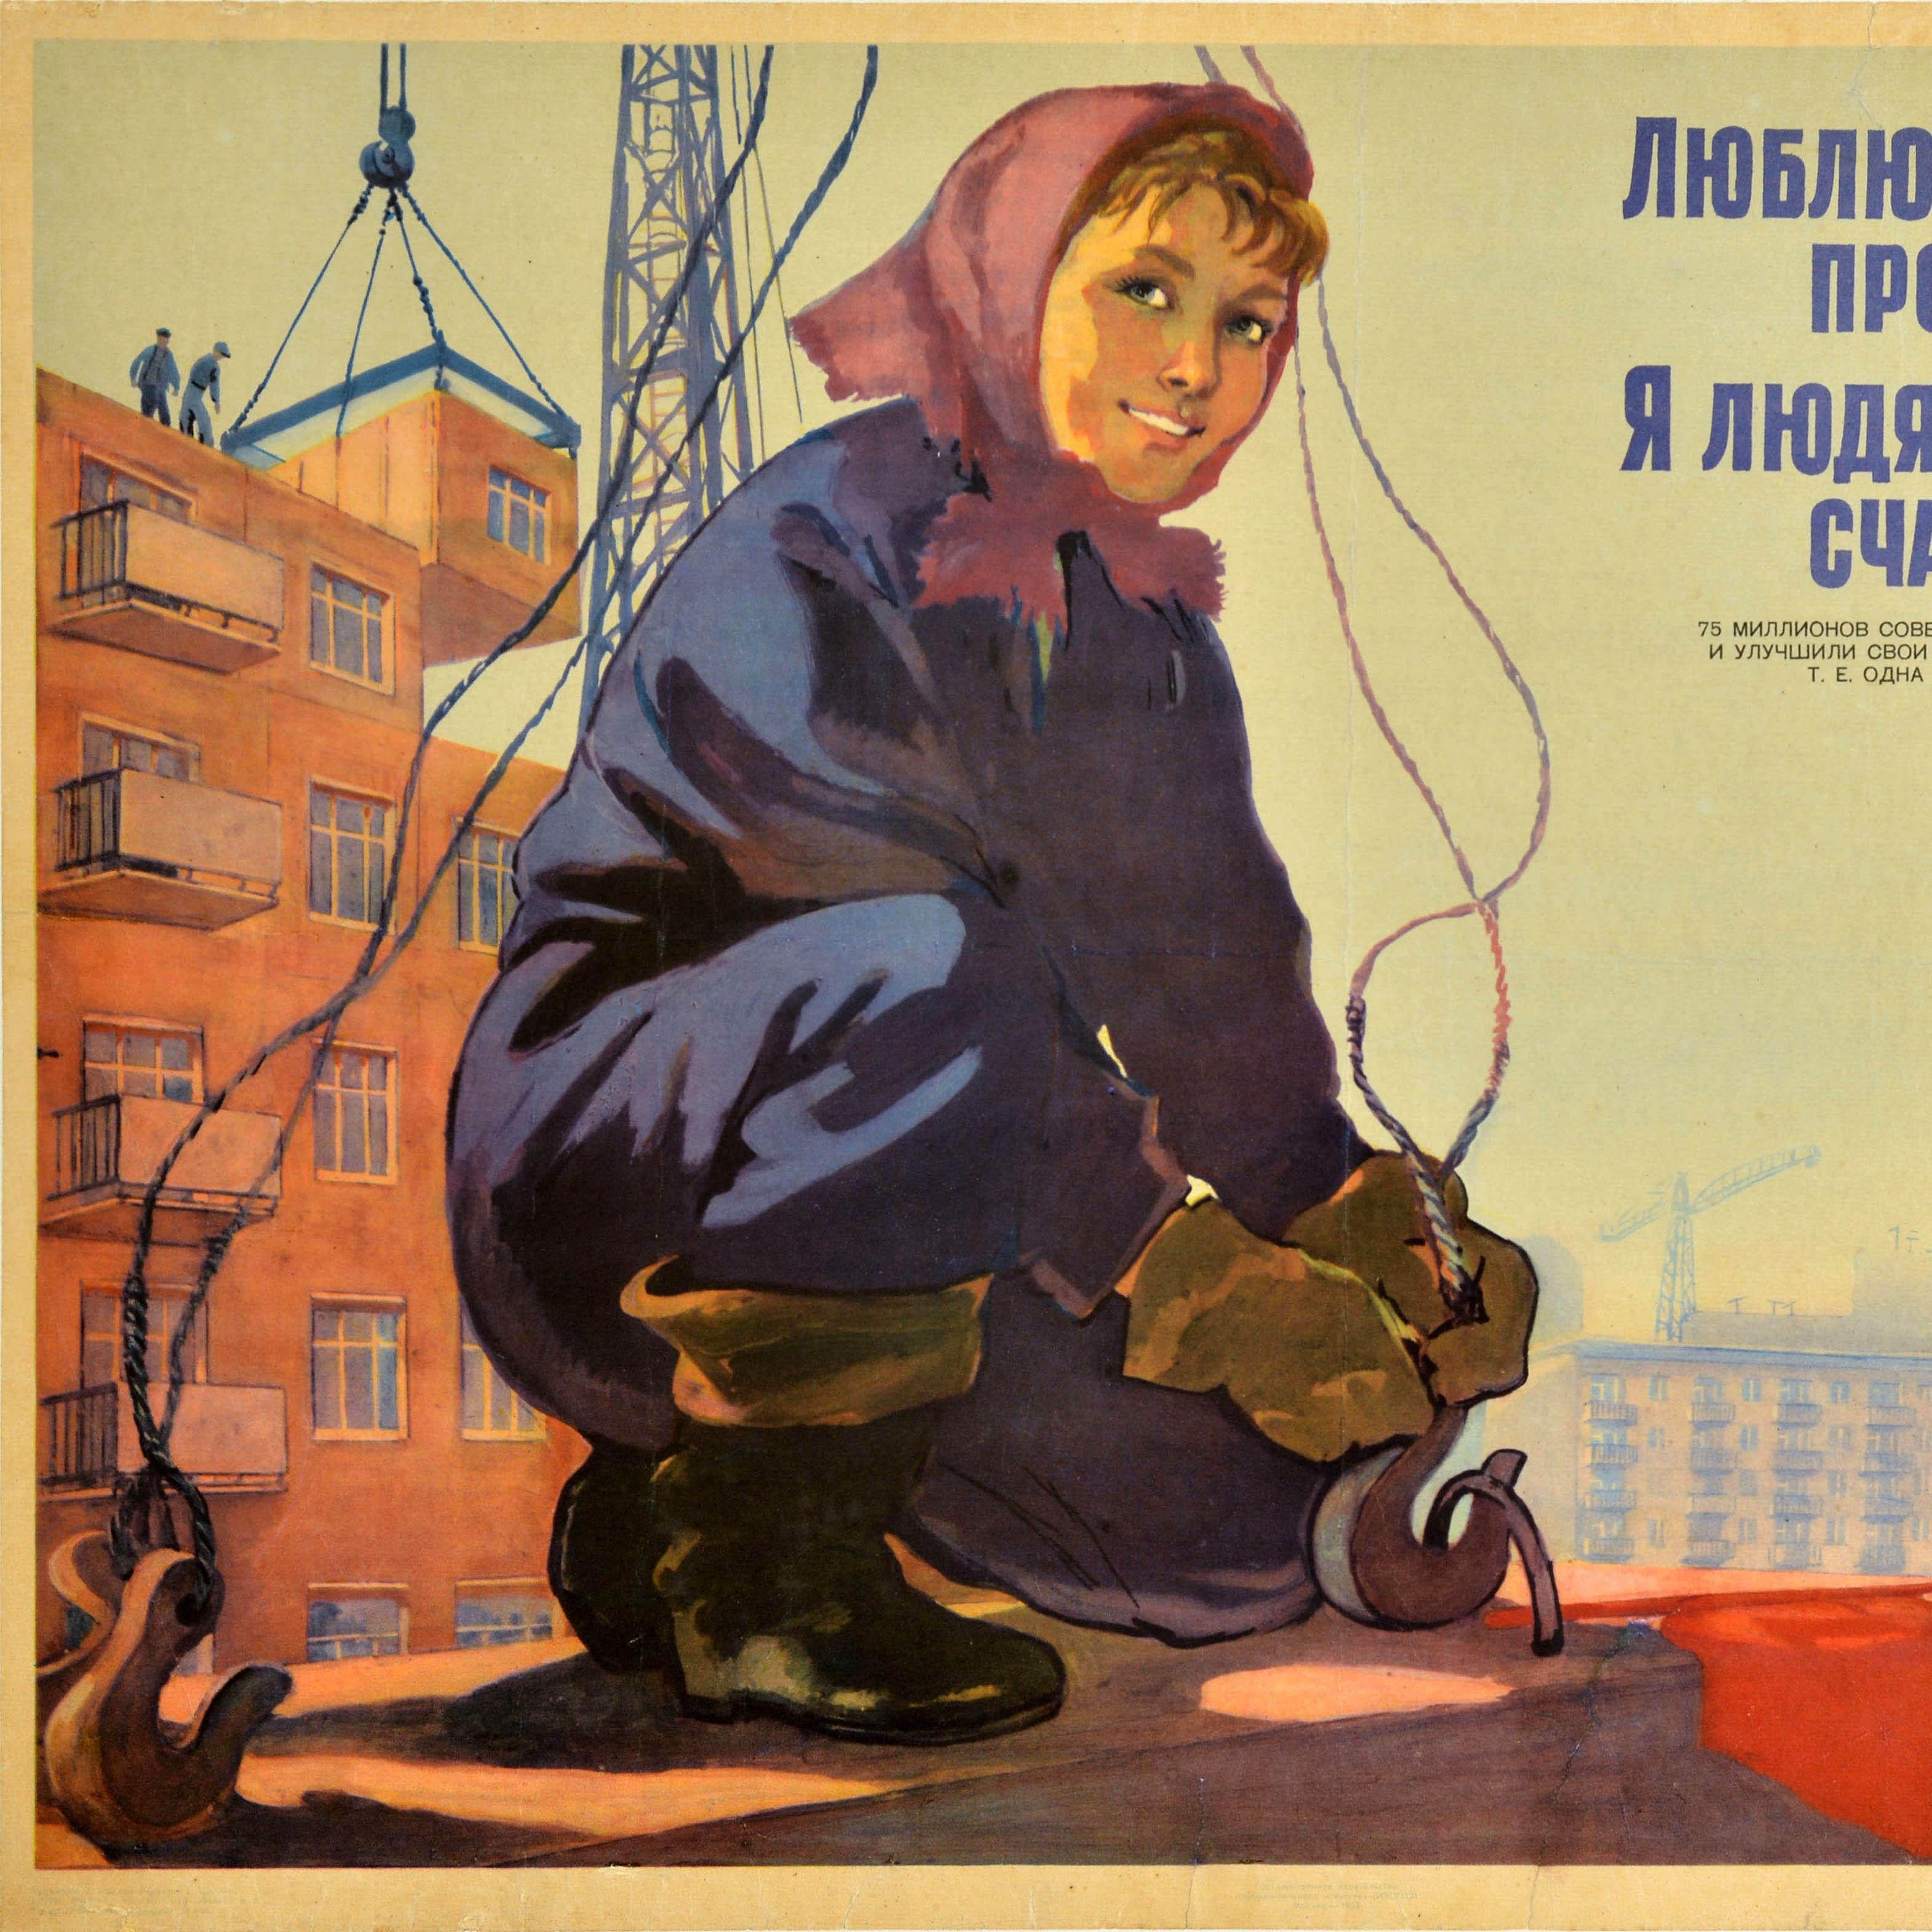 Russian Original Vintage Soviet Propaganda Poster Housing Construction Builder USSR